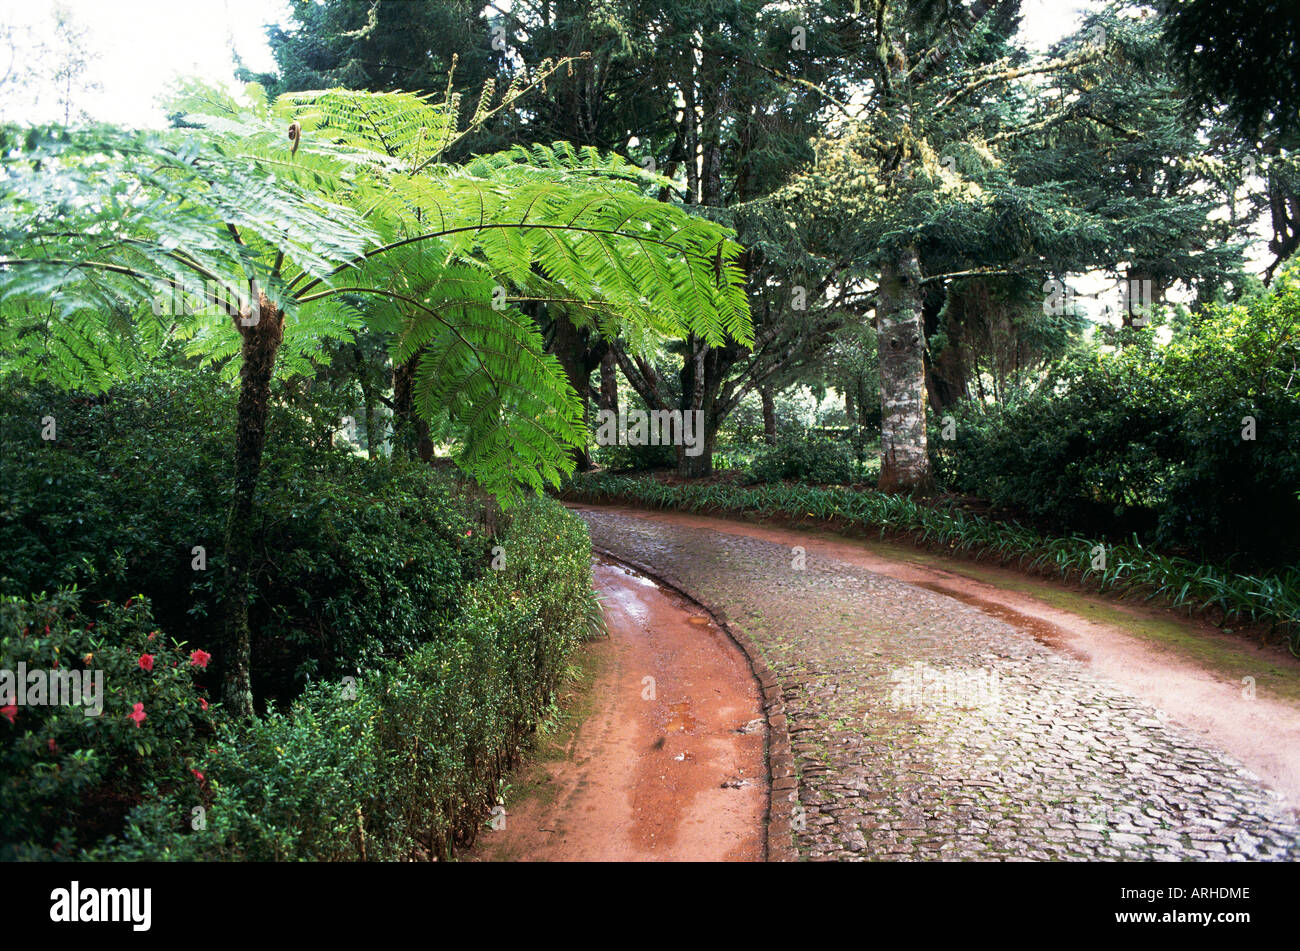 La lumière filtre à travers les arbres matures sur un écrin de verdure et un sentier courbant l'écart entre les haies dans les jardins de l'hôtel Quinta da Junta à Santo da Serra Banque D'Images